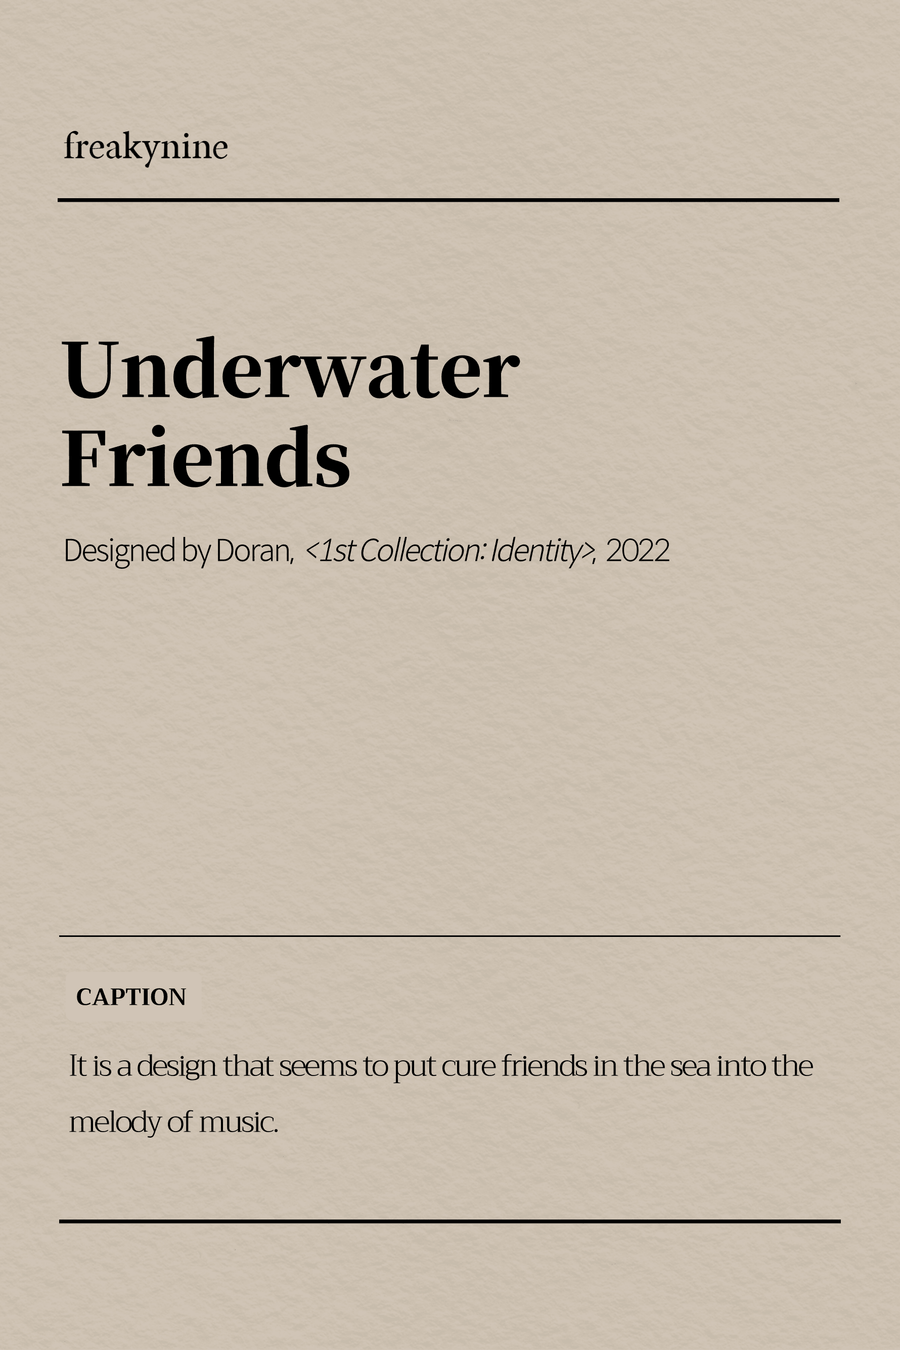 (Doran) Underwater Friends (2EA) - freakynine